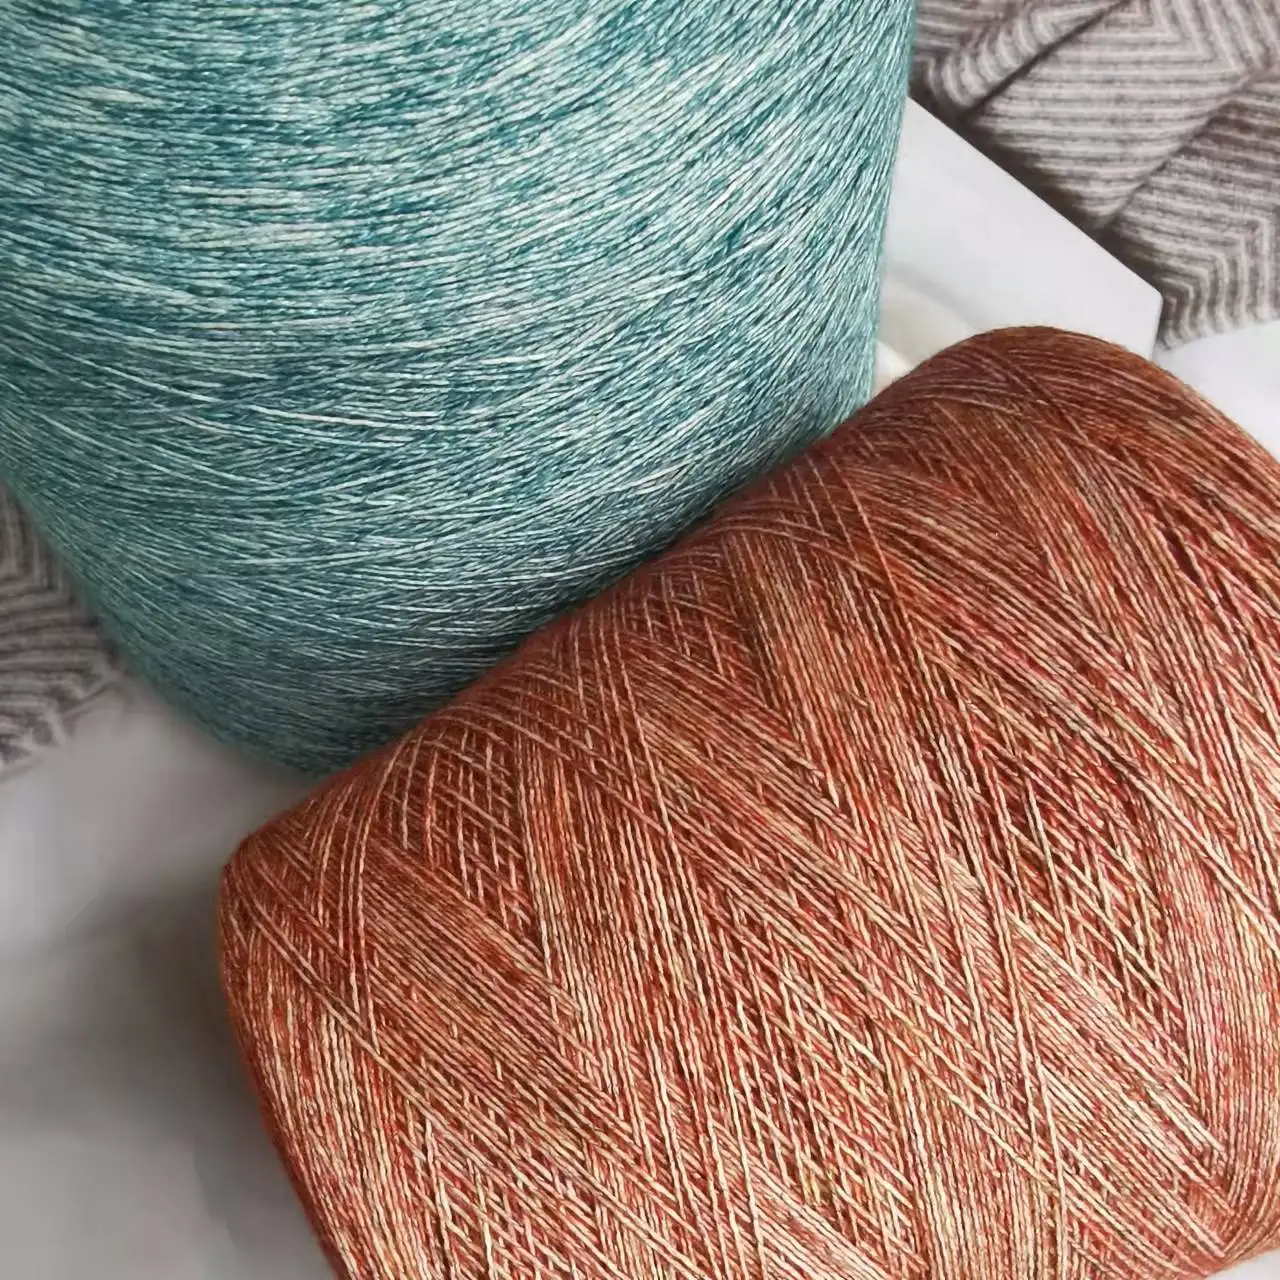 

500g 74% Cotton Yarn For Knitting High quality 1mm Hand knitting Yarn Crochet threads Knit sweater shawl yarn Acrylic yarn ZL59